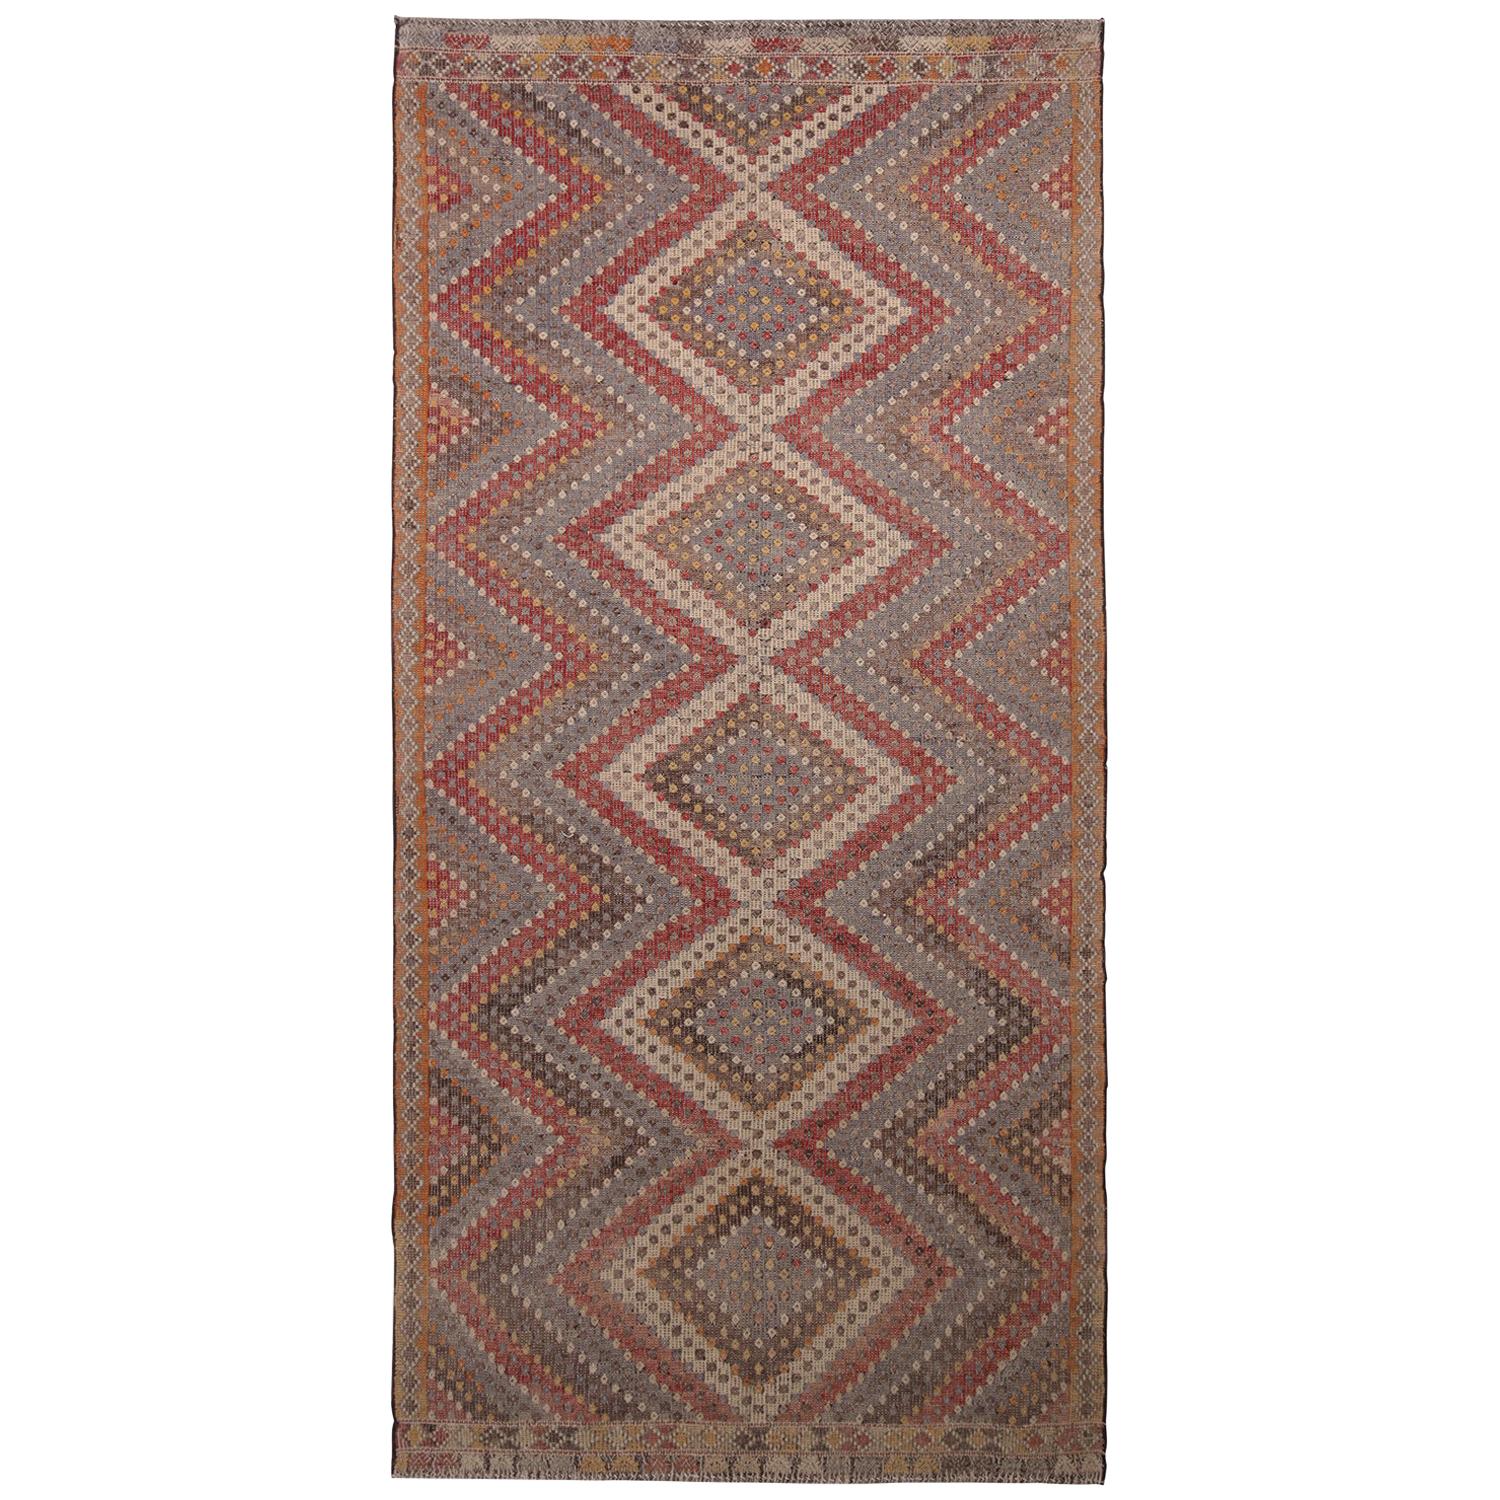 Vintage Midcentury Geometric Beige-Brown Red and Blue Wool Kilim Rug